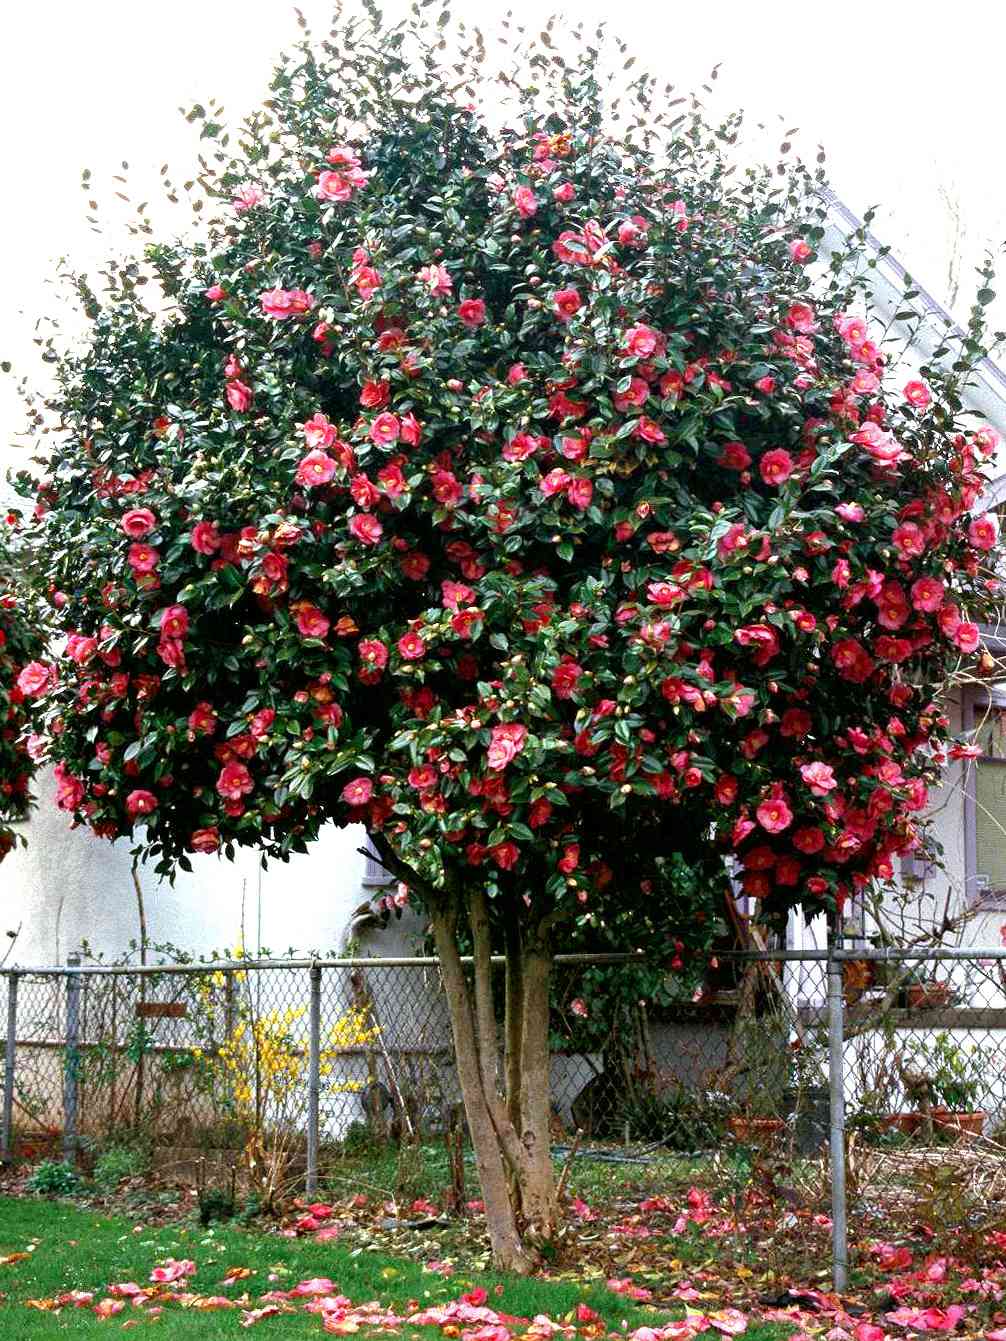 Camellia japonica 'Kramer's Supreme' with pink blooms